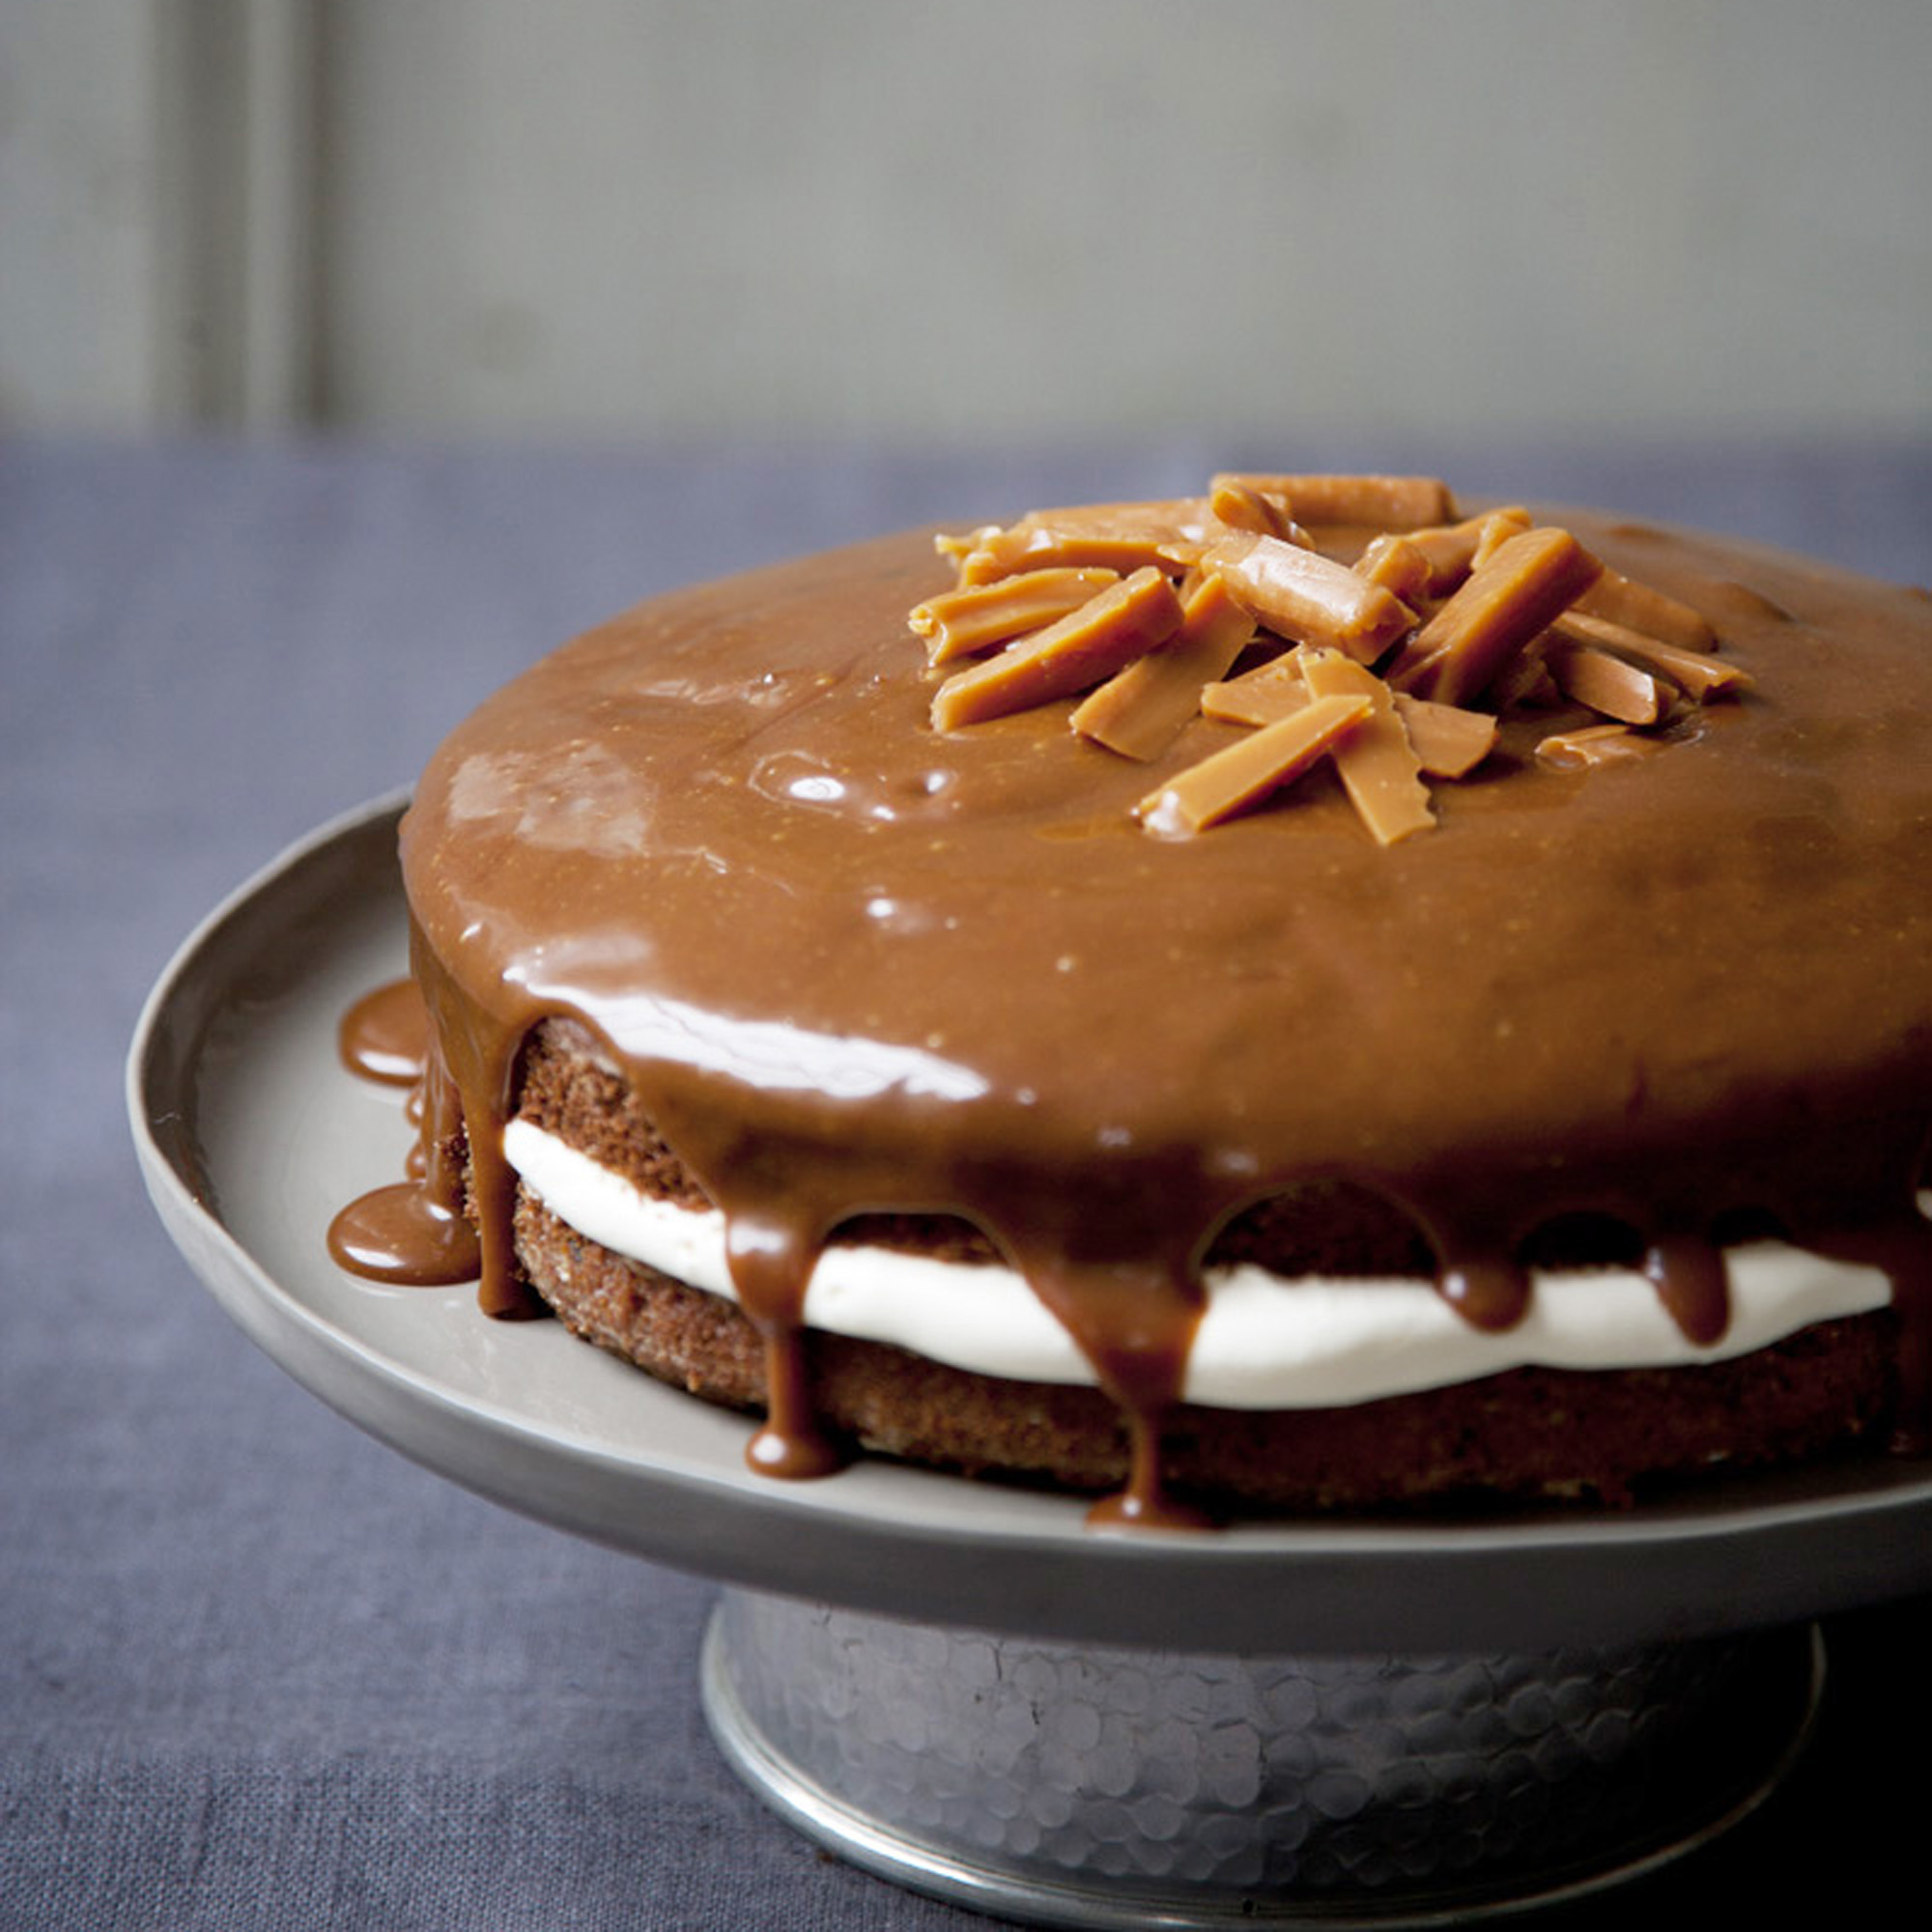 Date Honey Nut Cake - Easy Loaf Cake, Moist and Tender